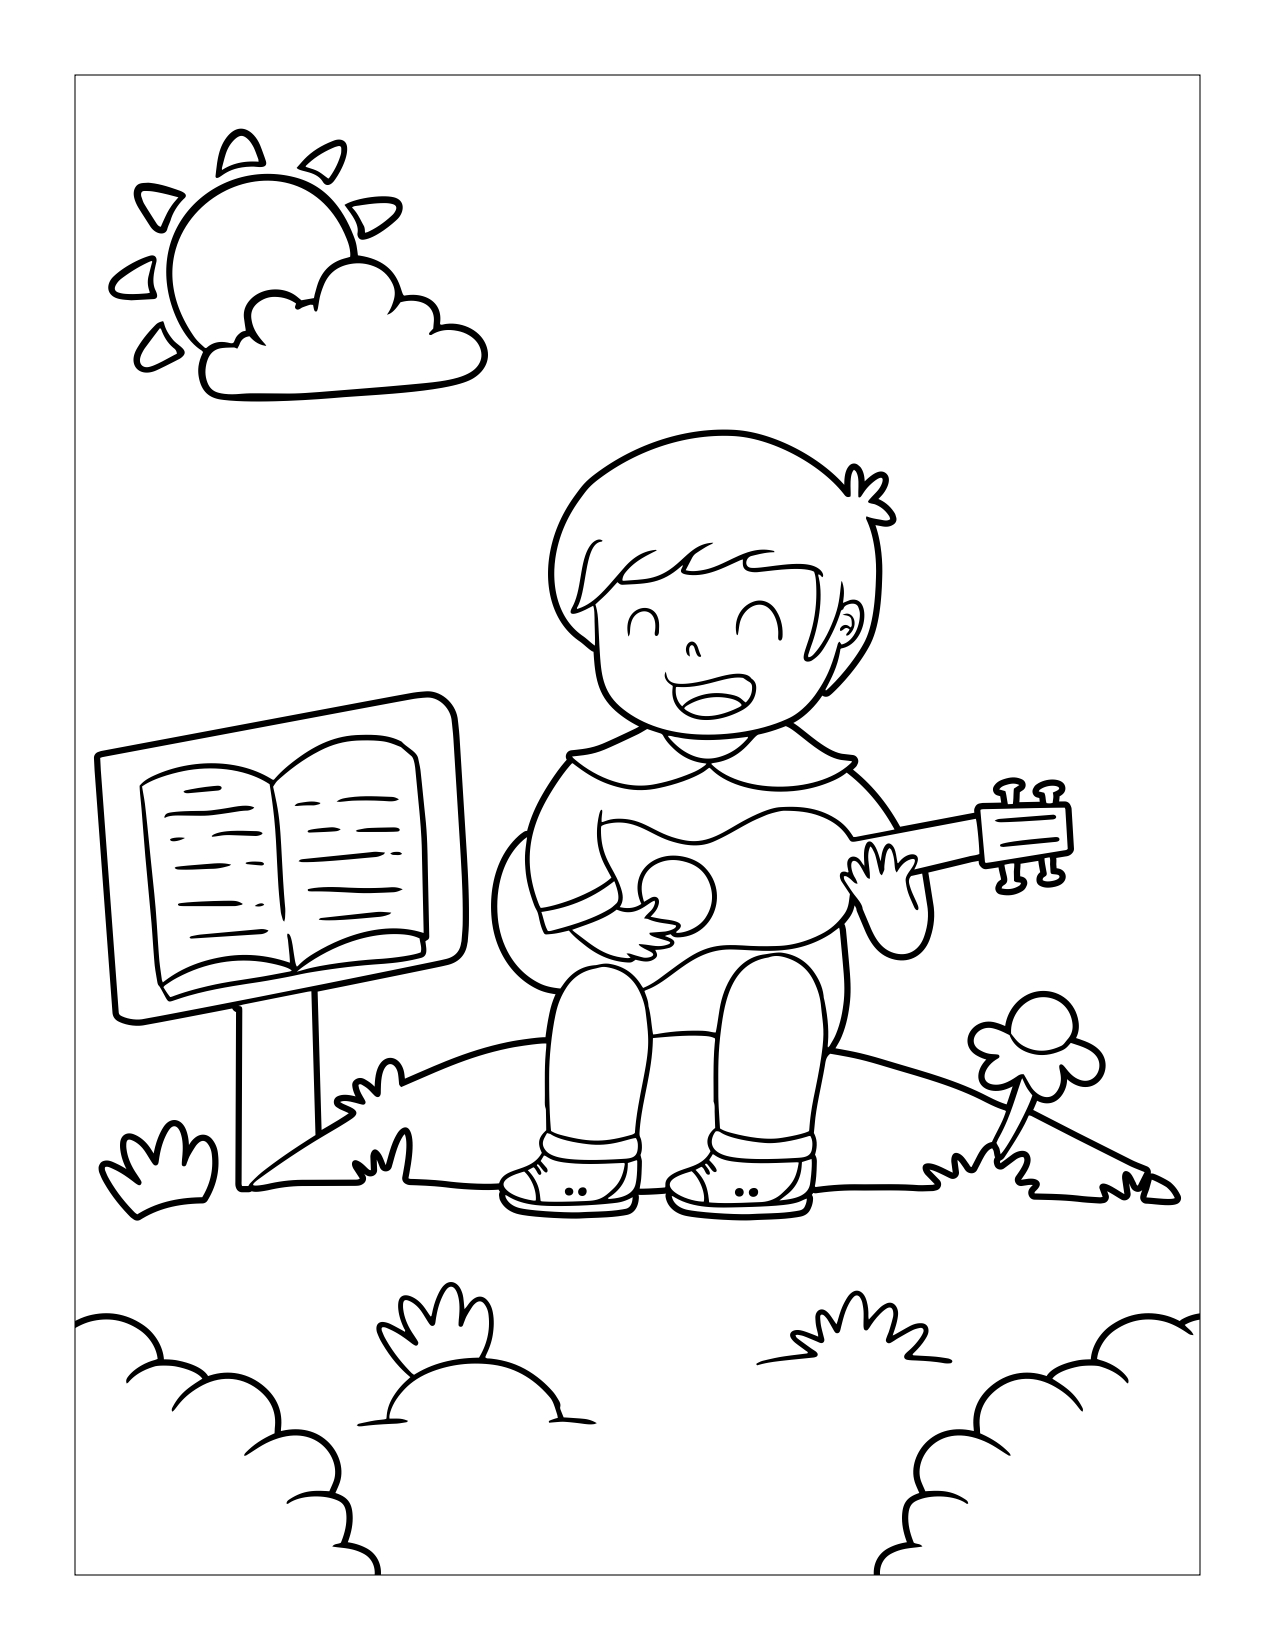 Página para colorear de niño tocando la guitarra